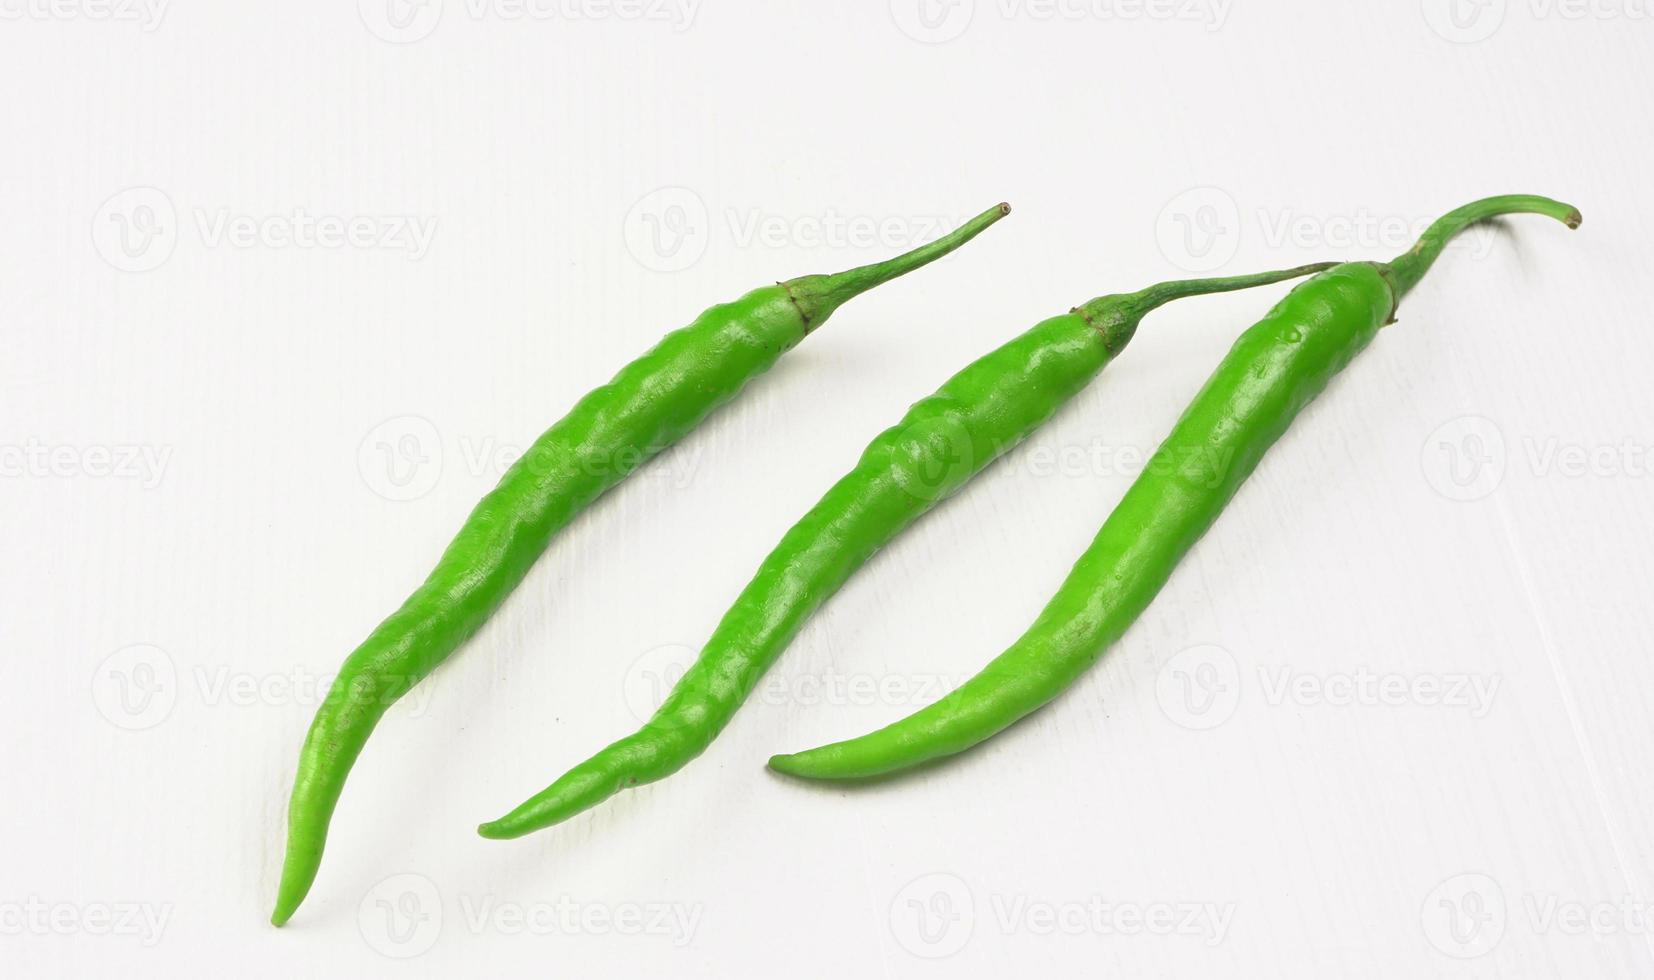 färska långa indiska gröna chili på trä bakgrund. foto